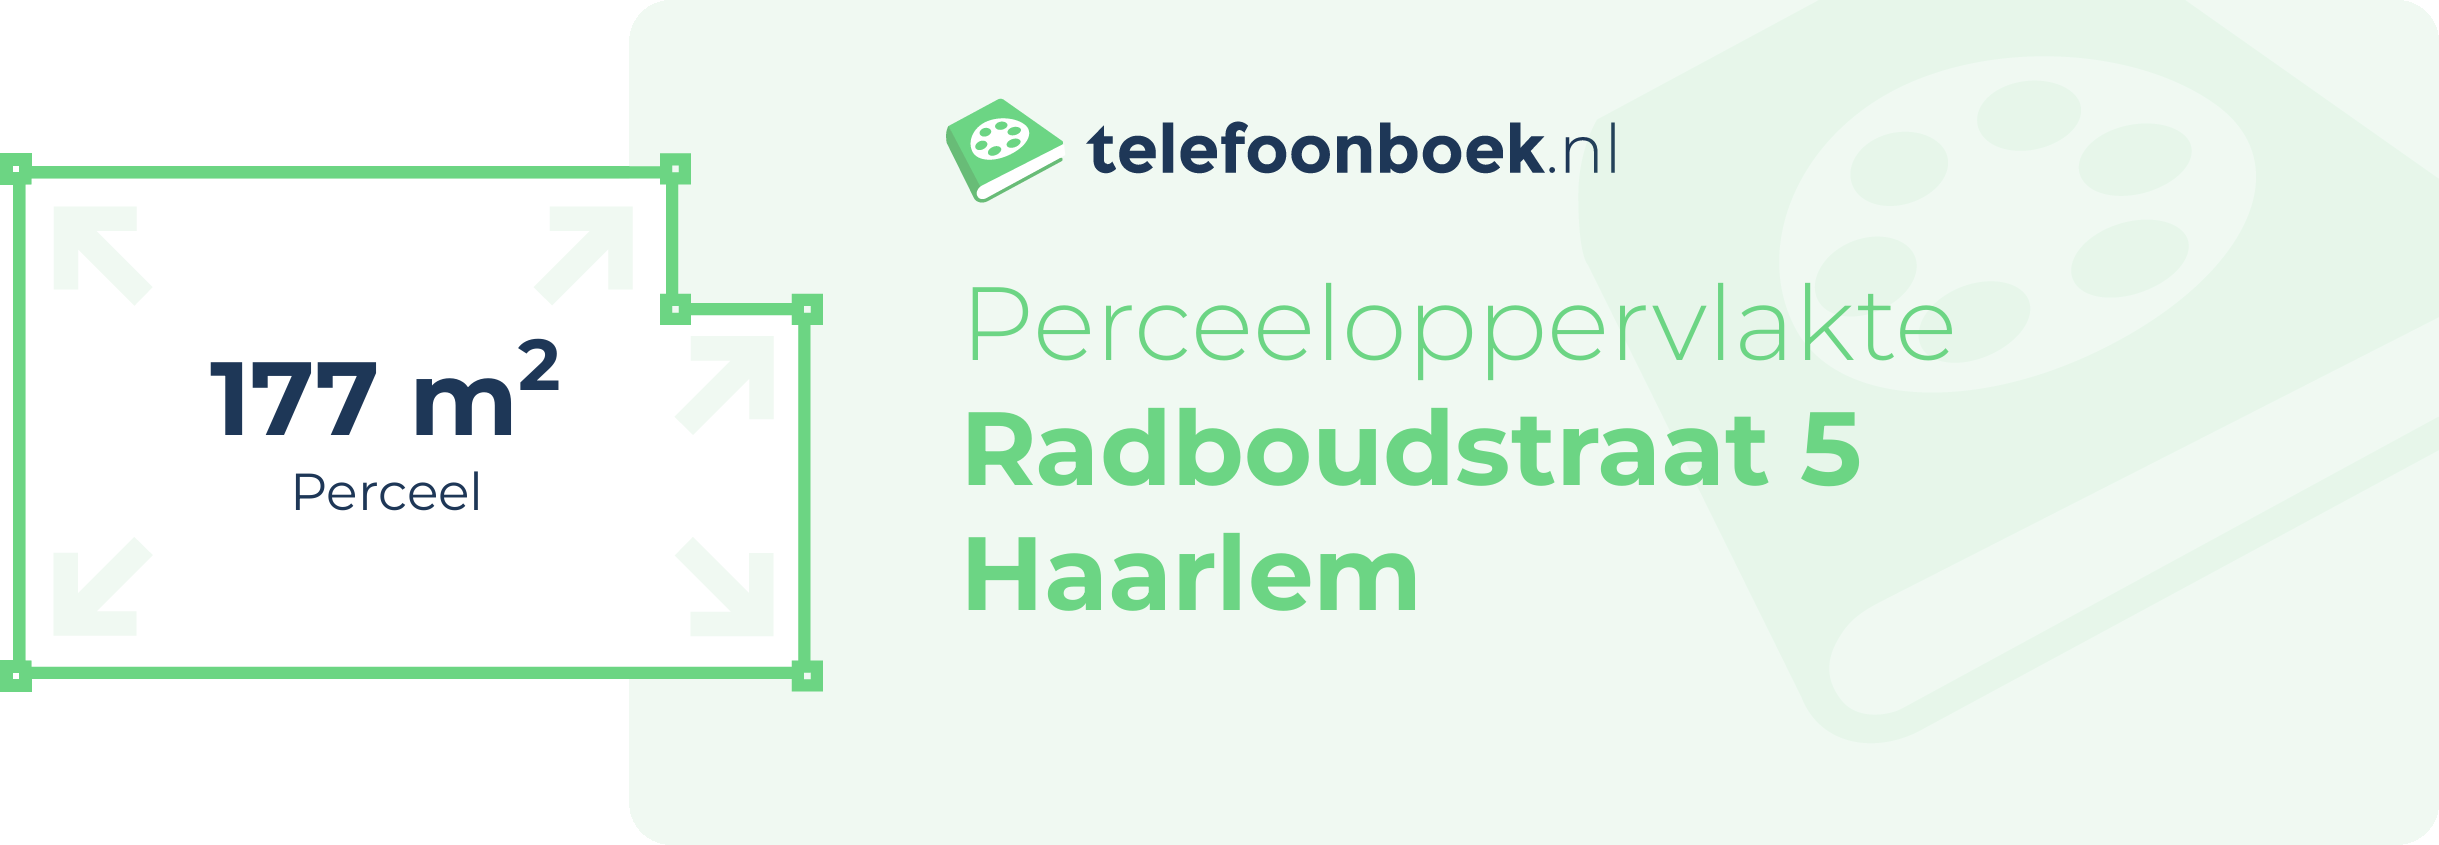 Perceeloppervlakte Radboudstraat 5 Haarlem